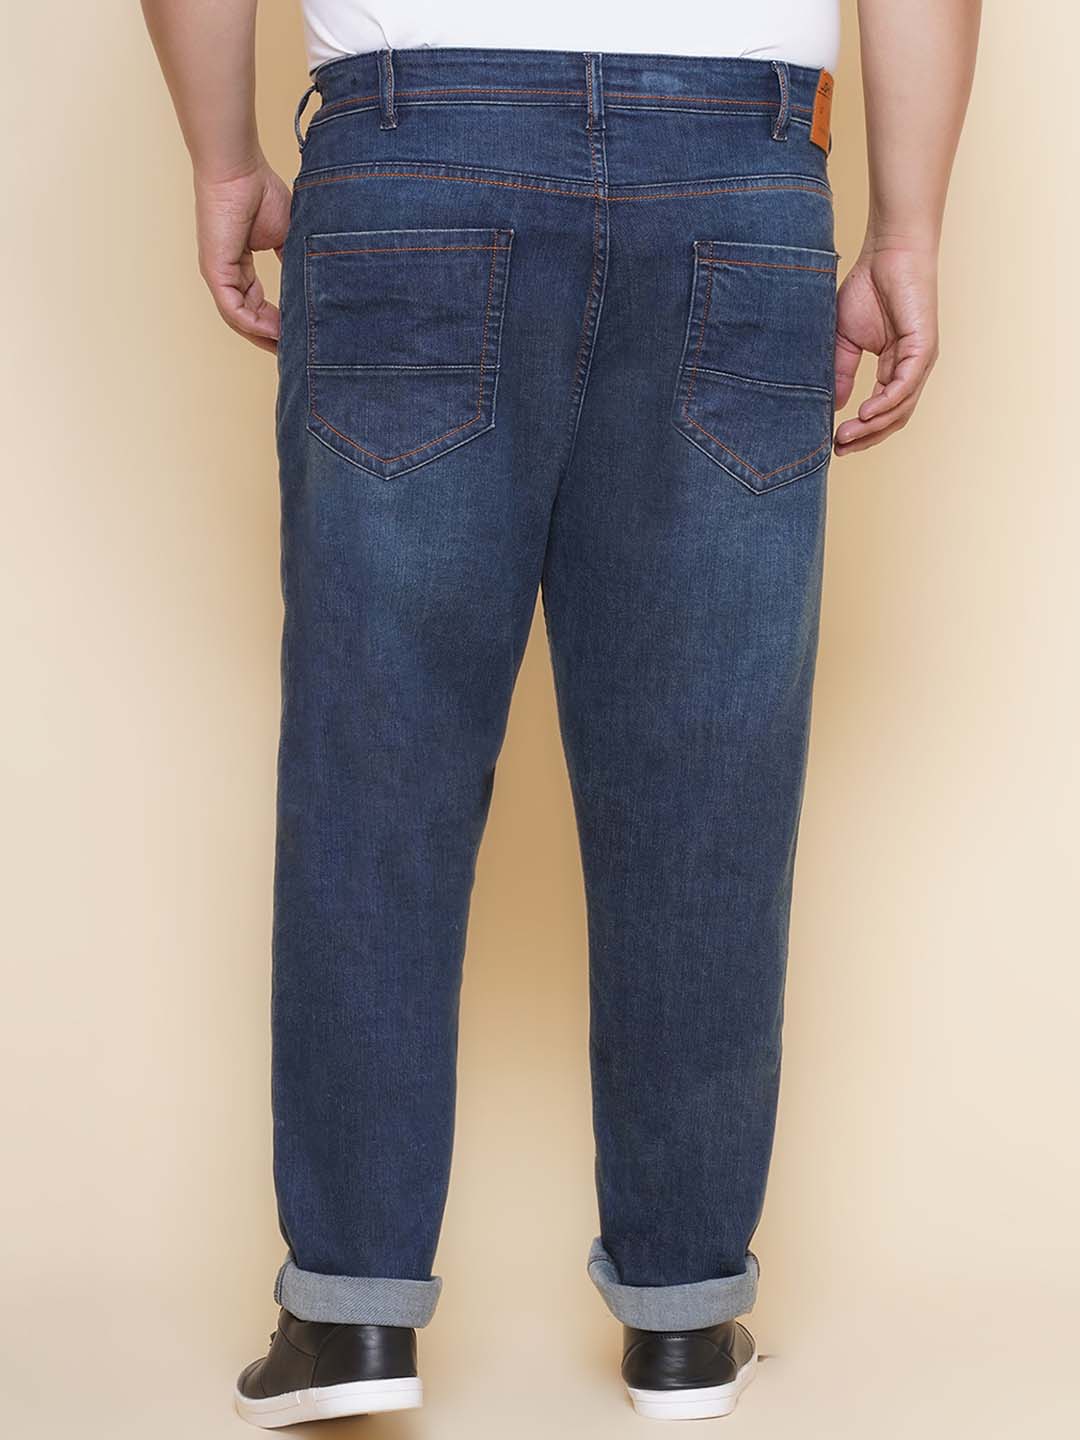 bottomwear/jeans/EJPJ25138/ejpj25138-5.jpg